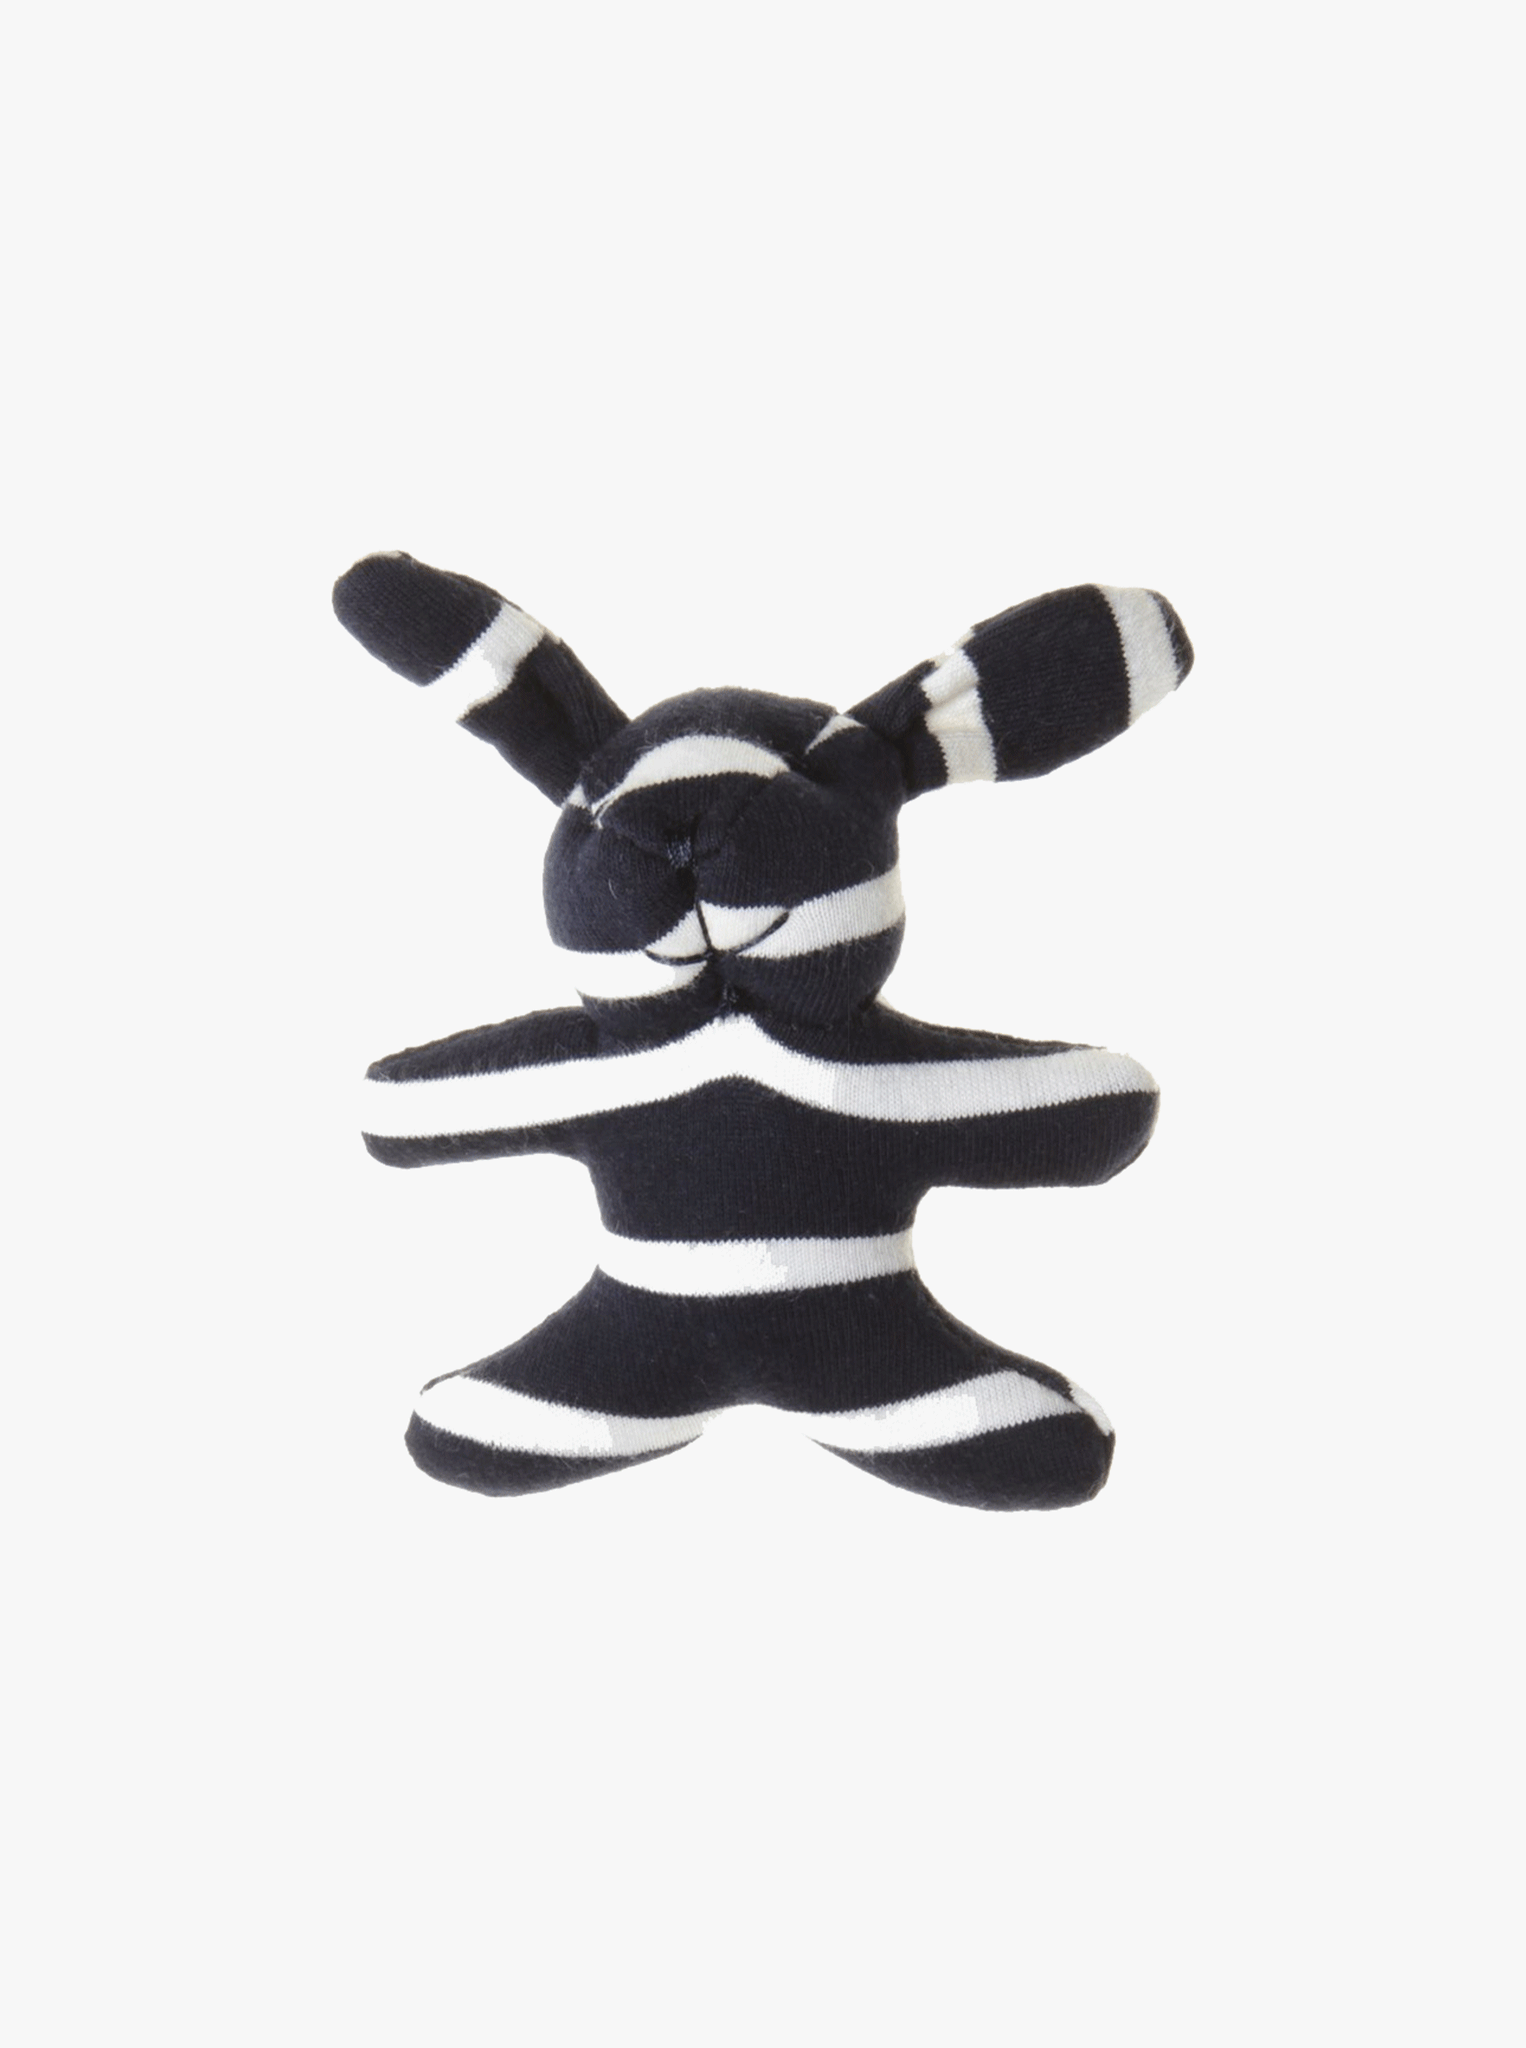 PO.P Stripe Mini Bunny Soft Toy